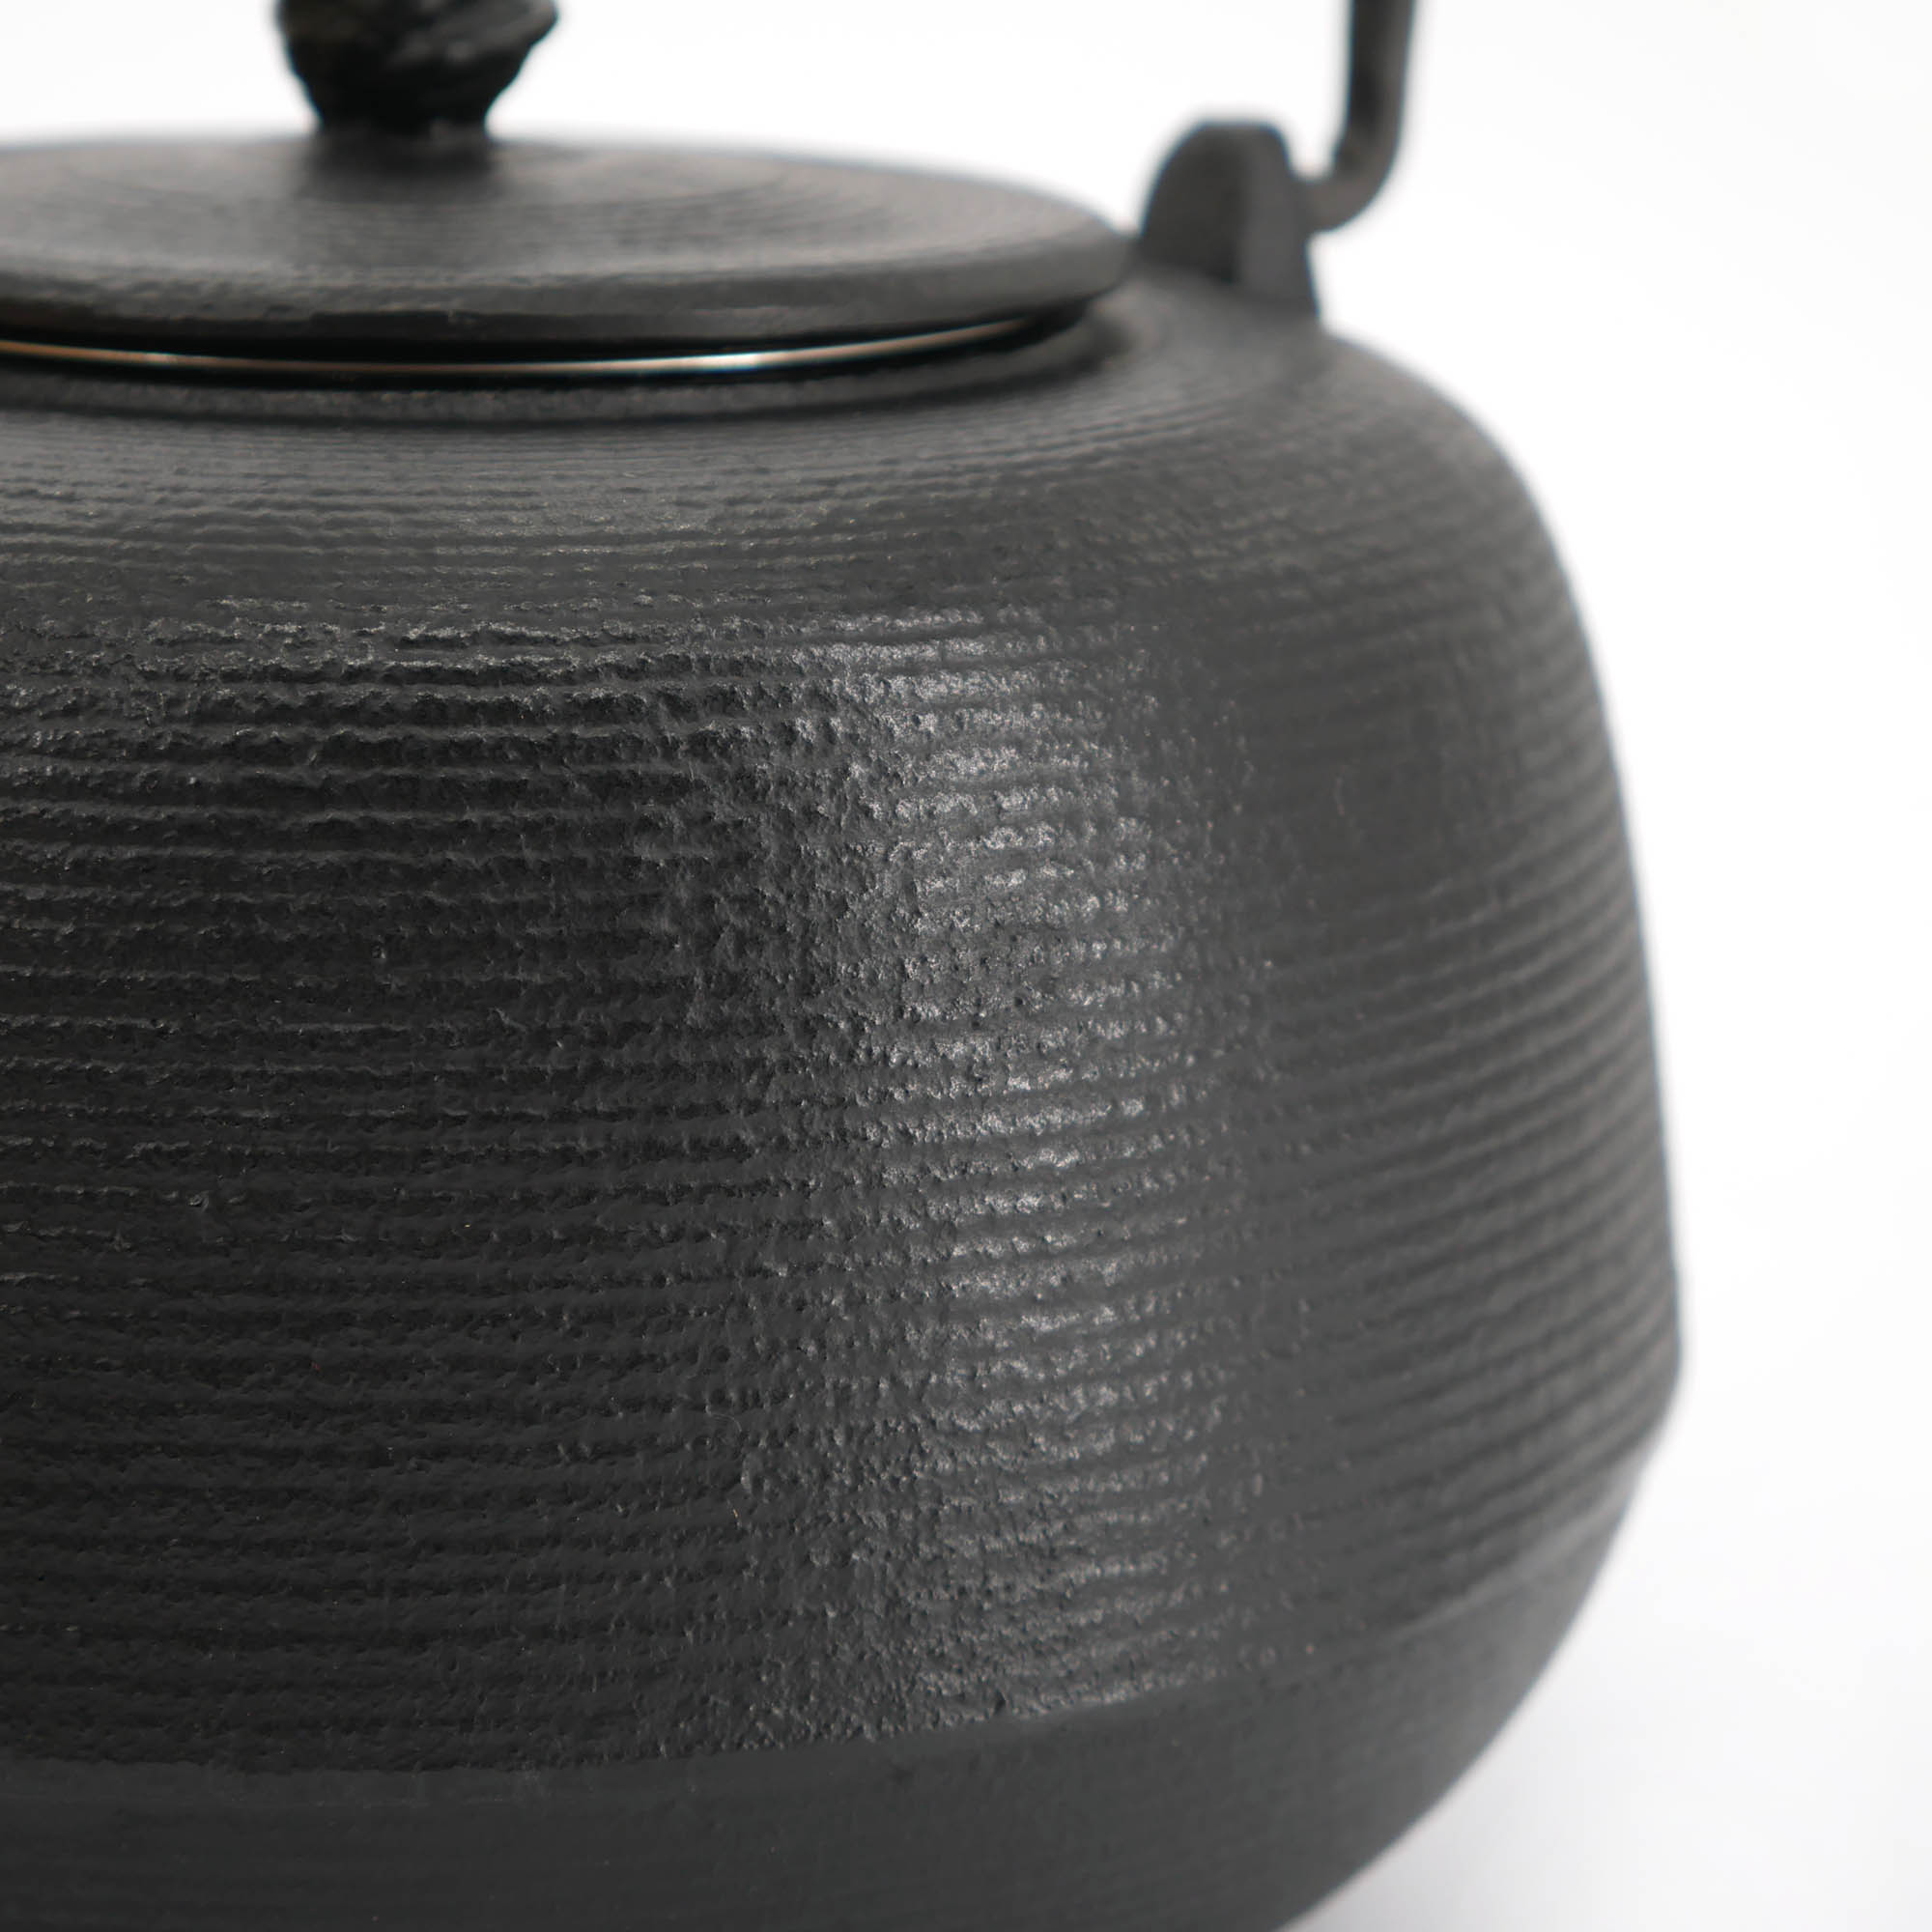 Tetera japonesa de hierro fundido esmaltada negra, ROJI ITOME, 1,2 lt